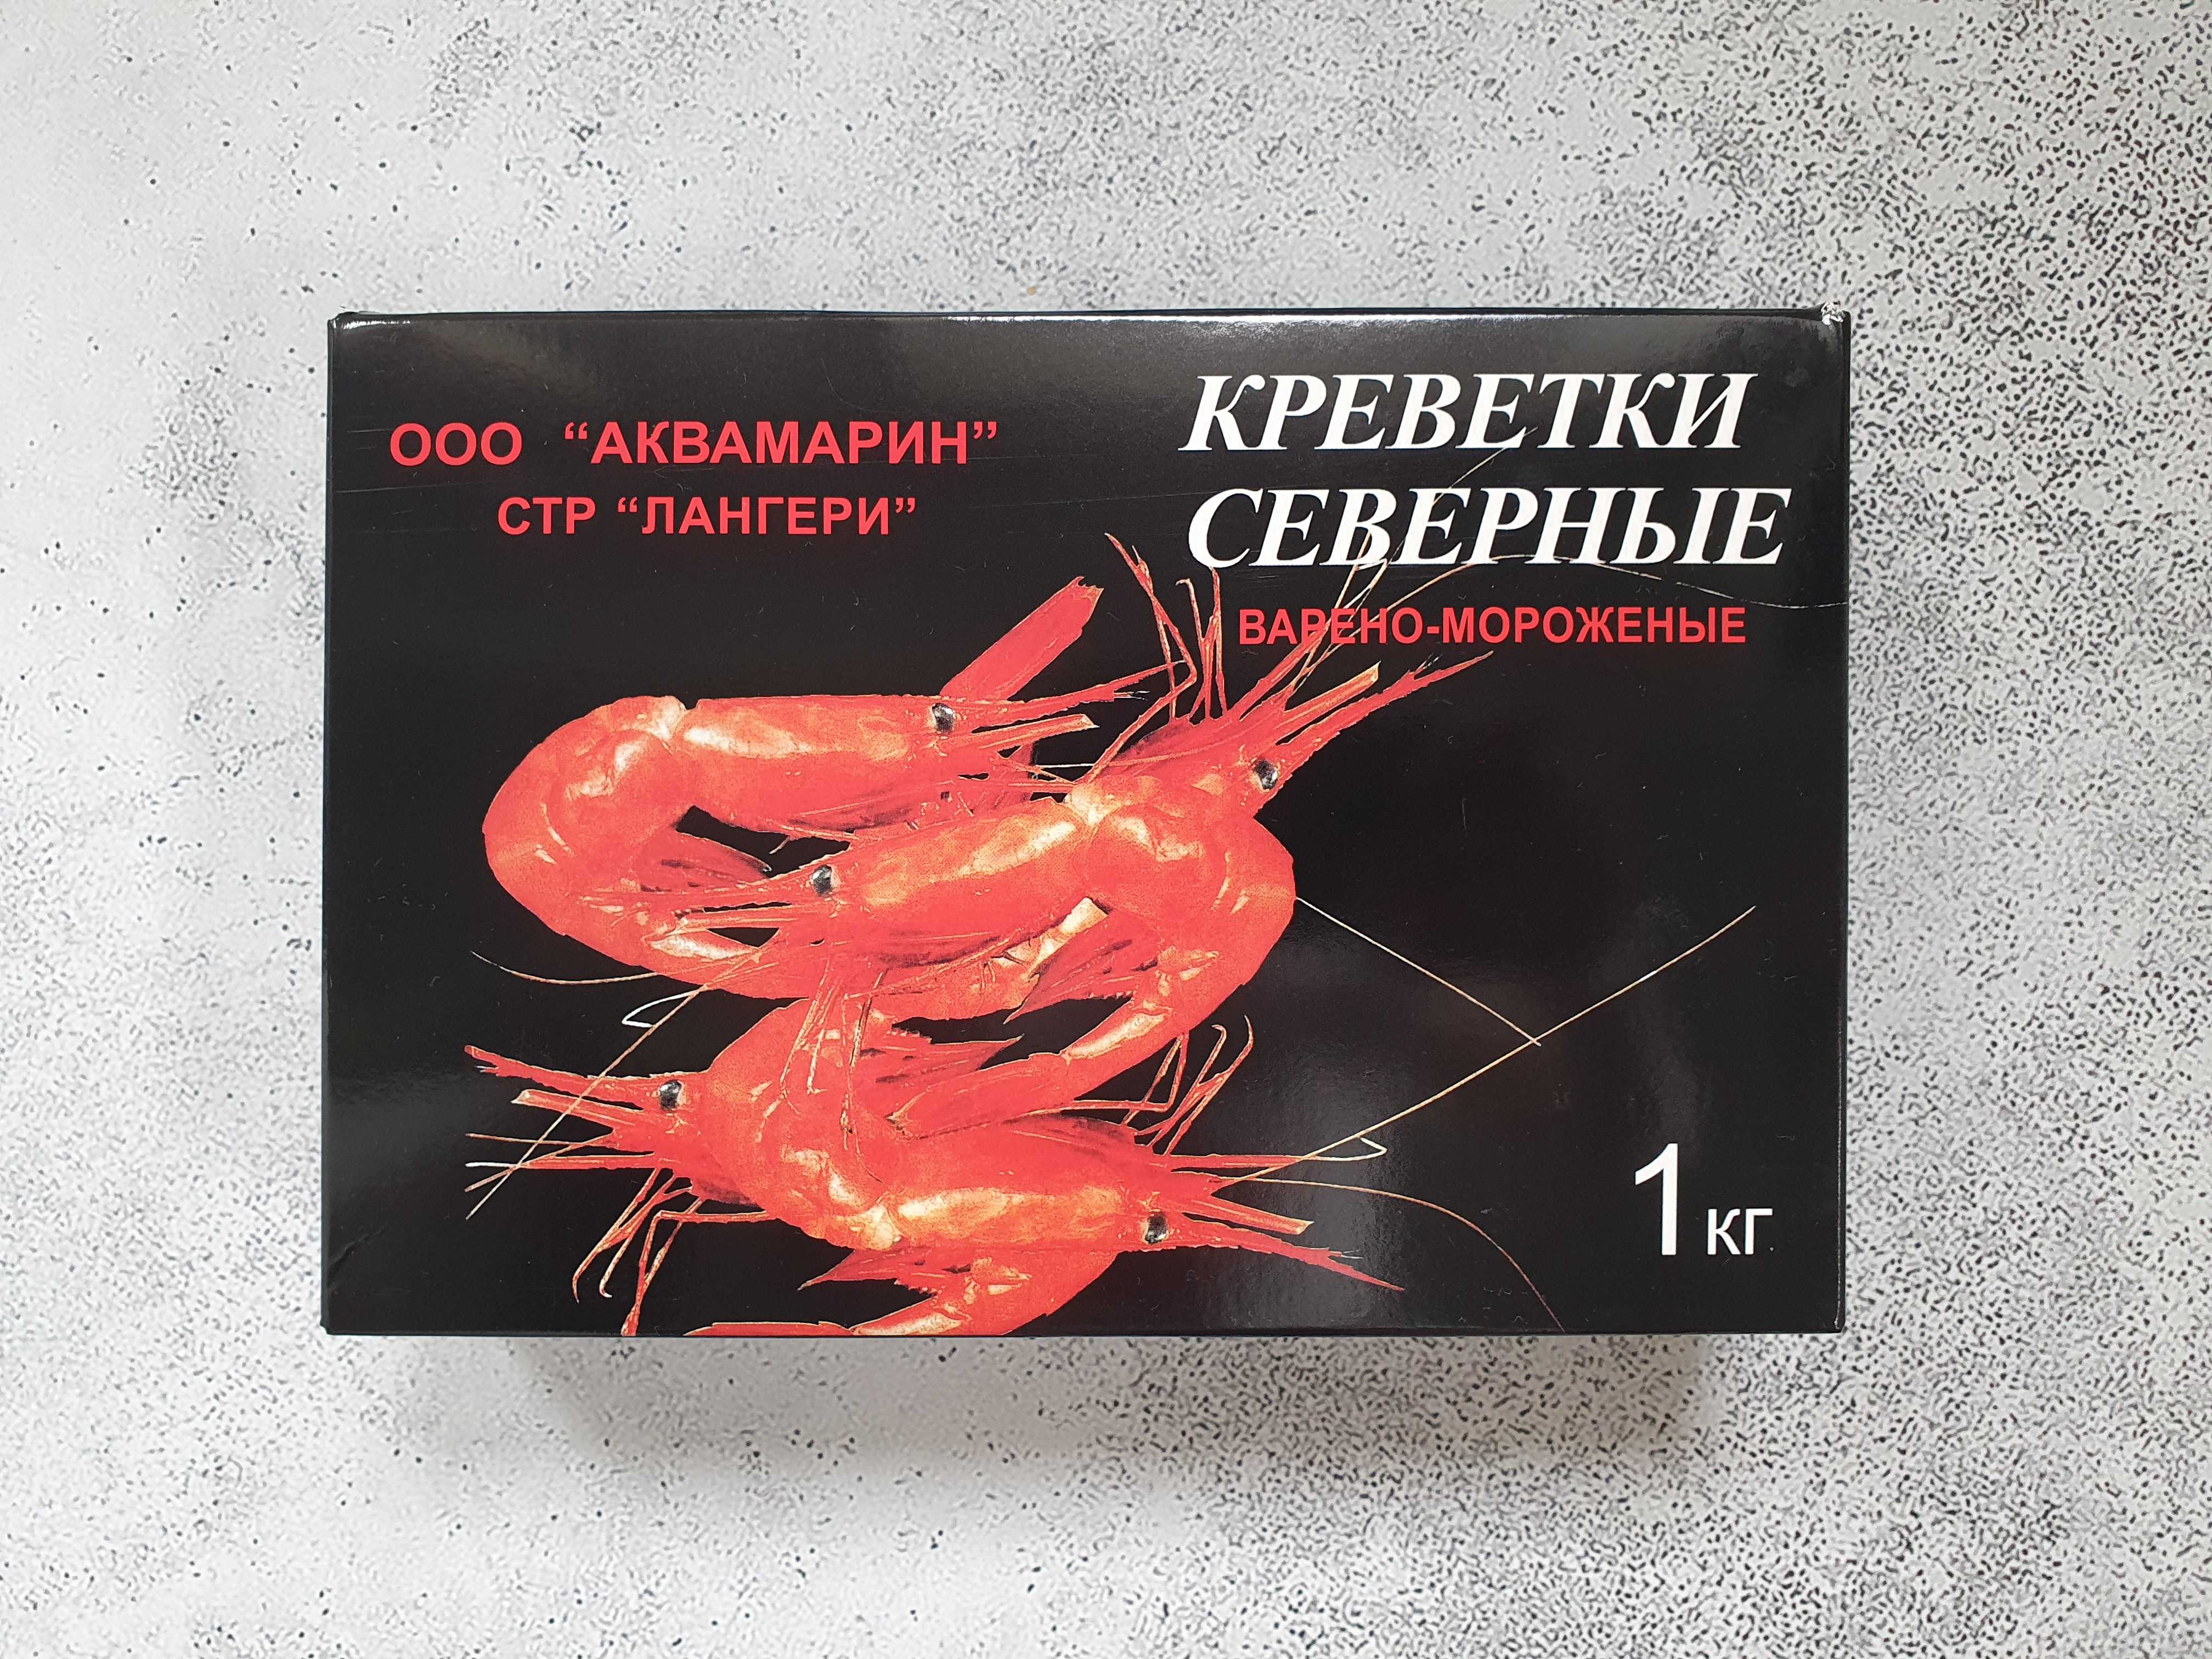 severnye akvamarin - Северная креветка 80/100